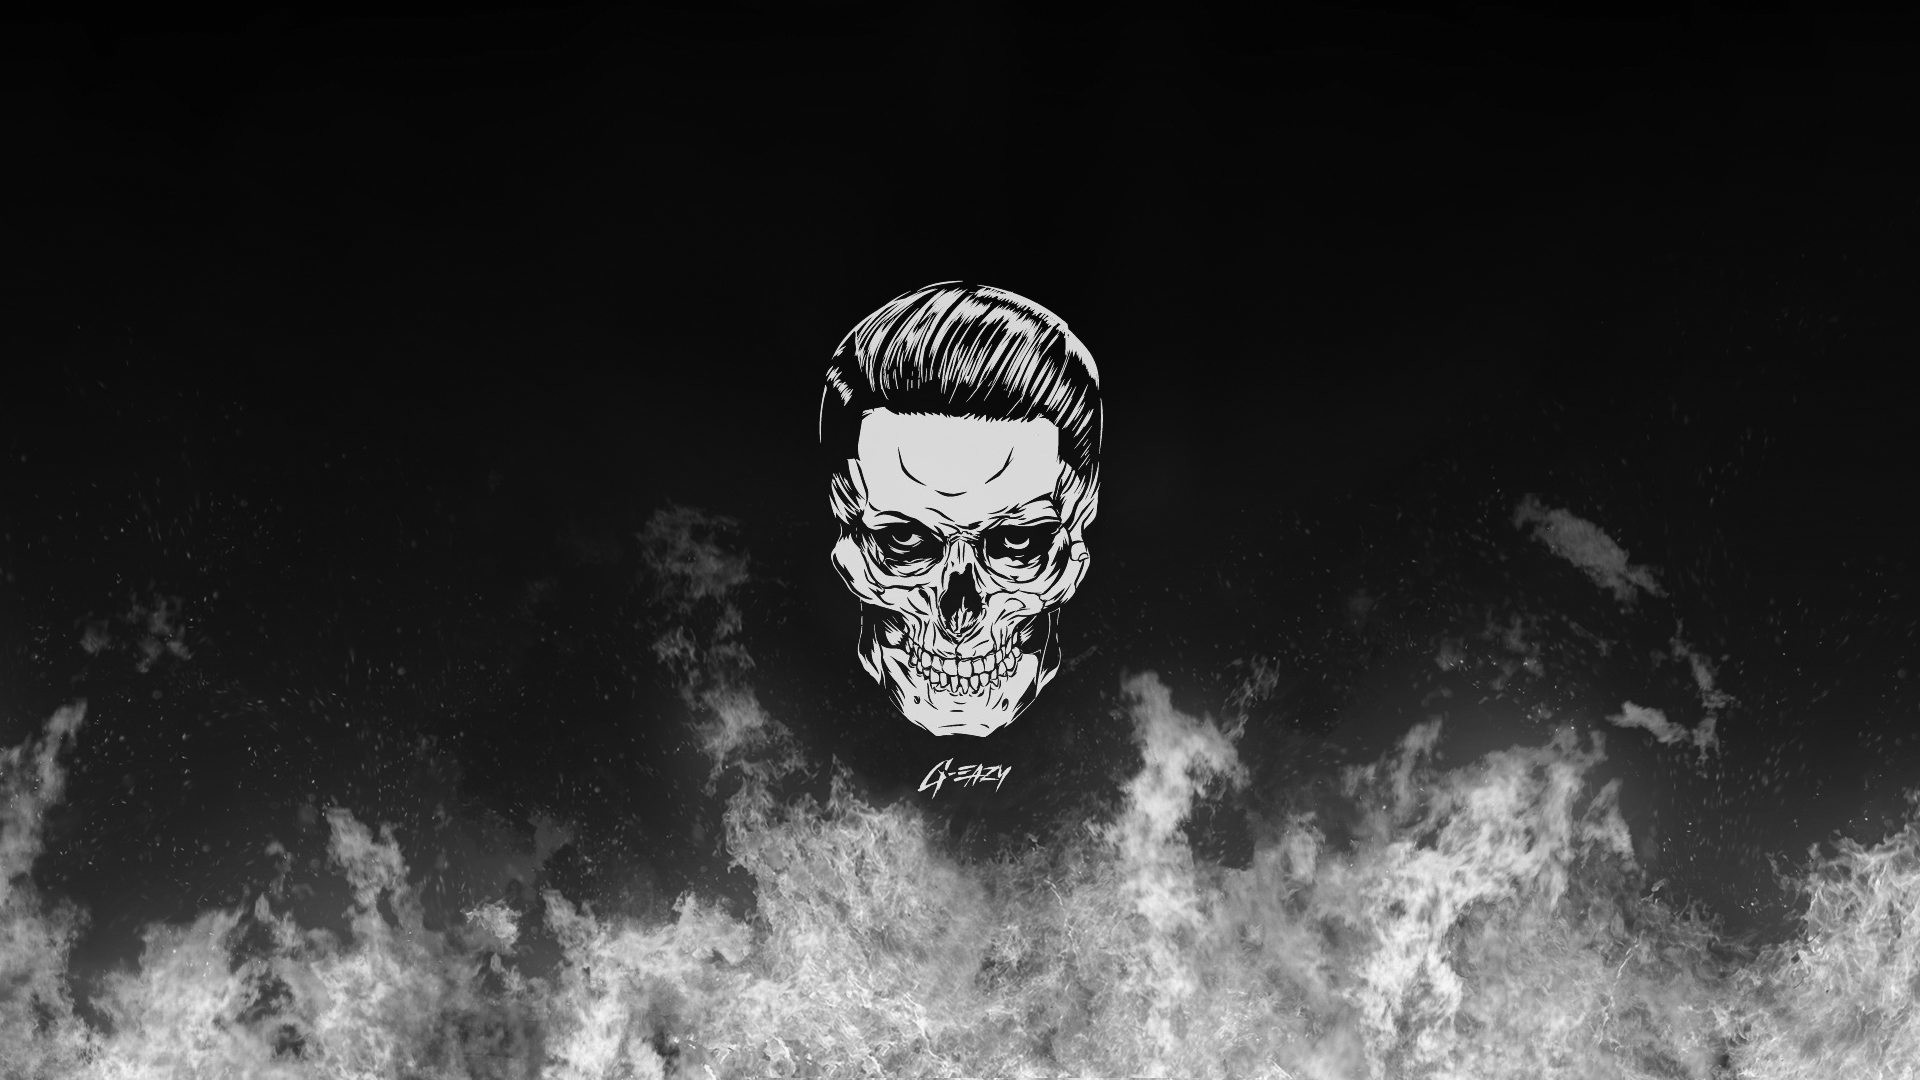 1920x1080 G-eazy Skull | Gallsource.com